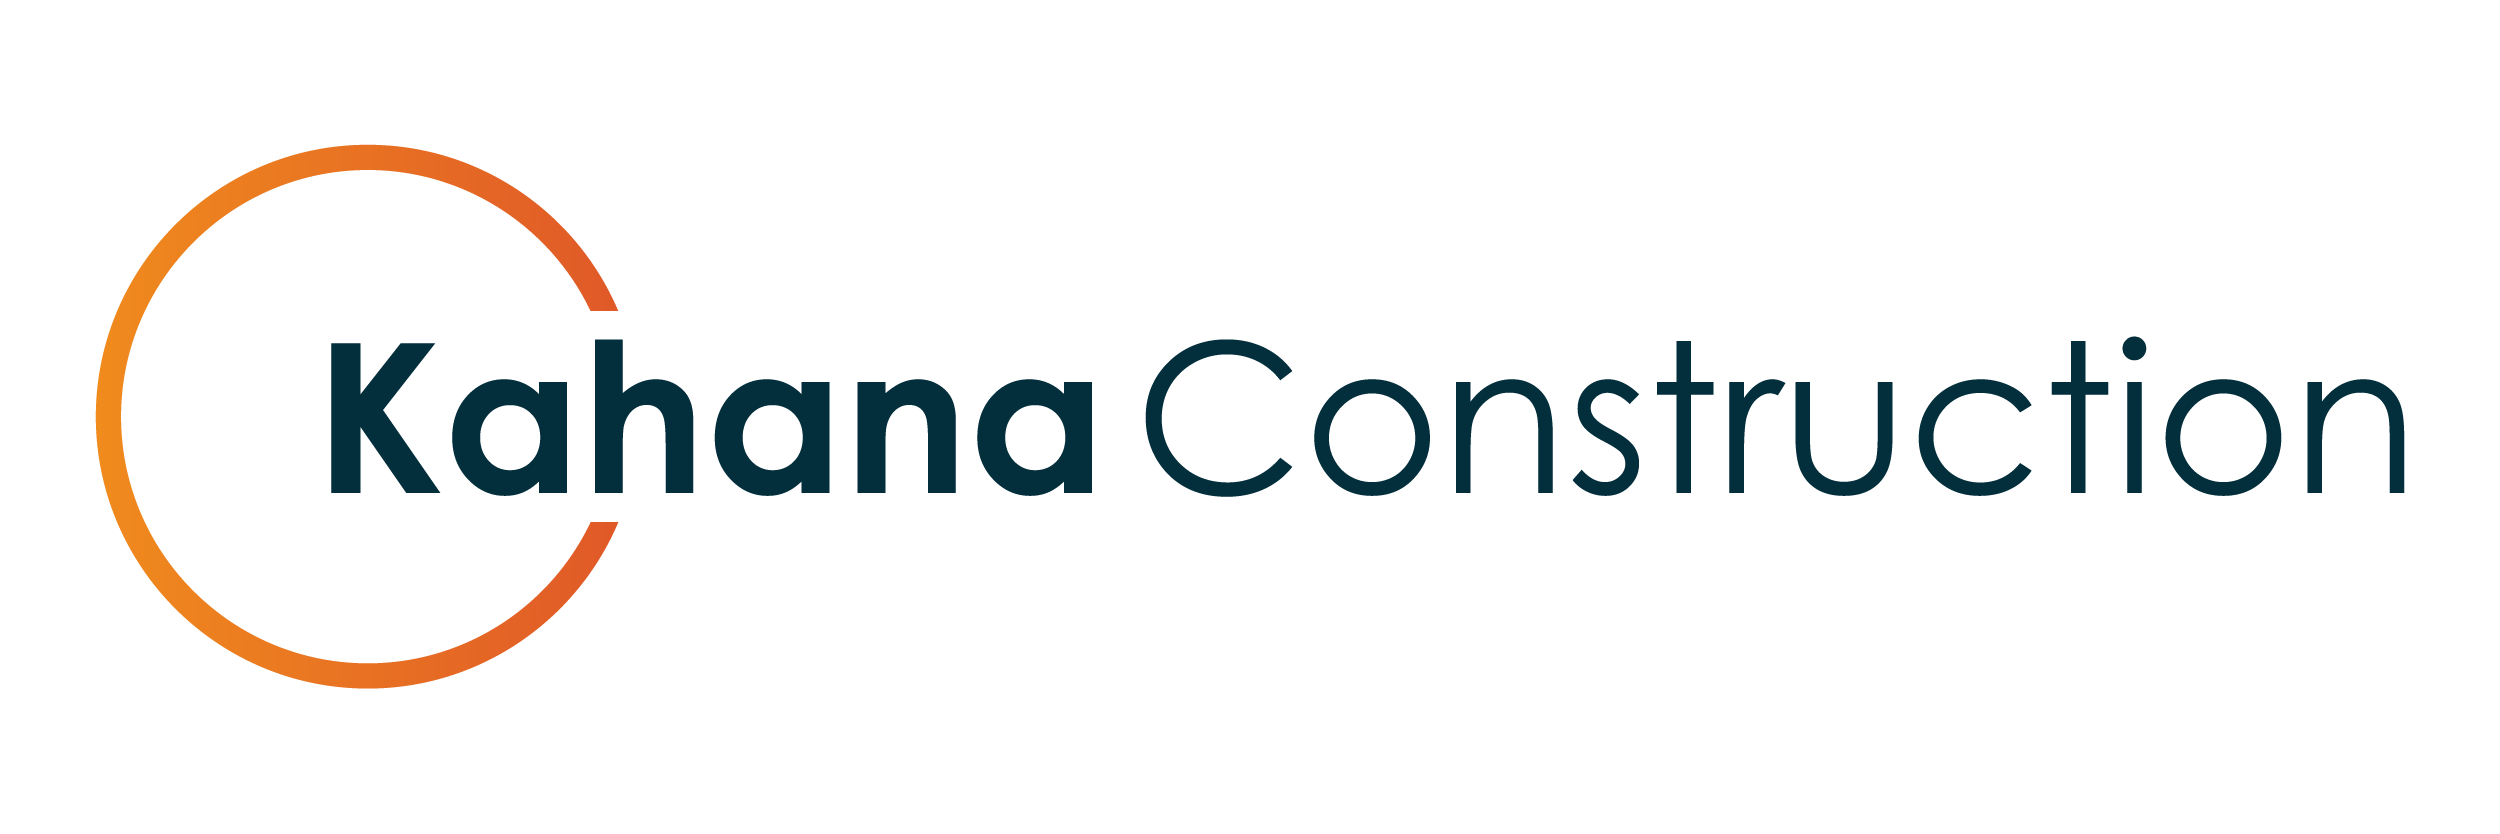 Kahana Construction logo primary